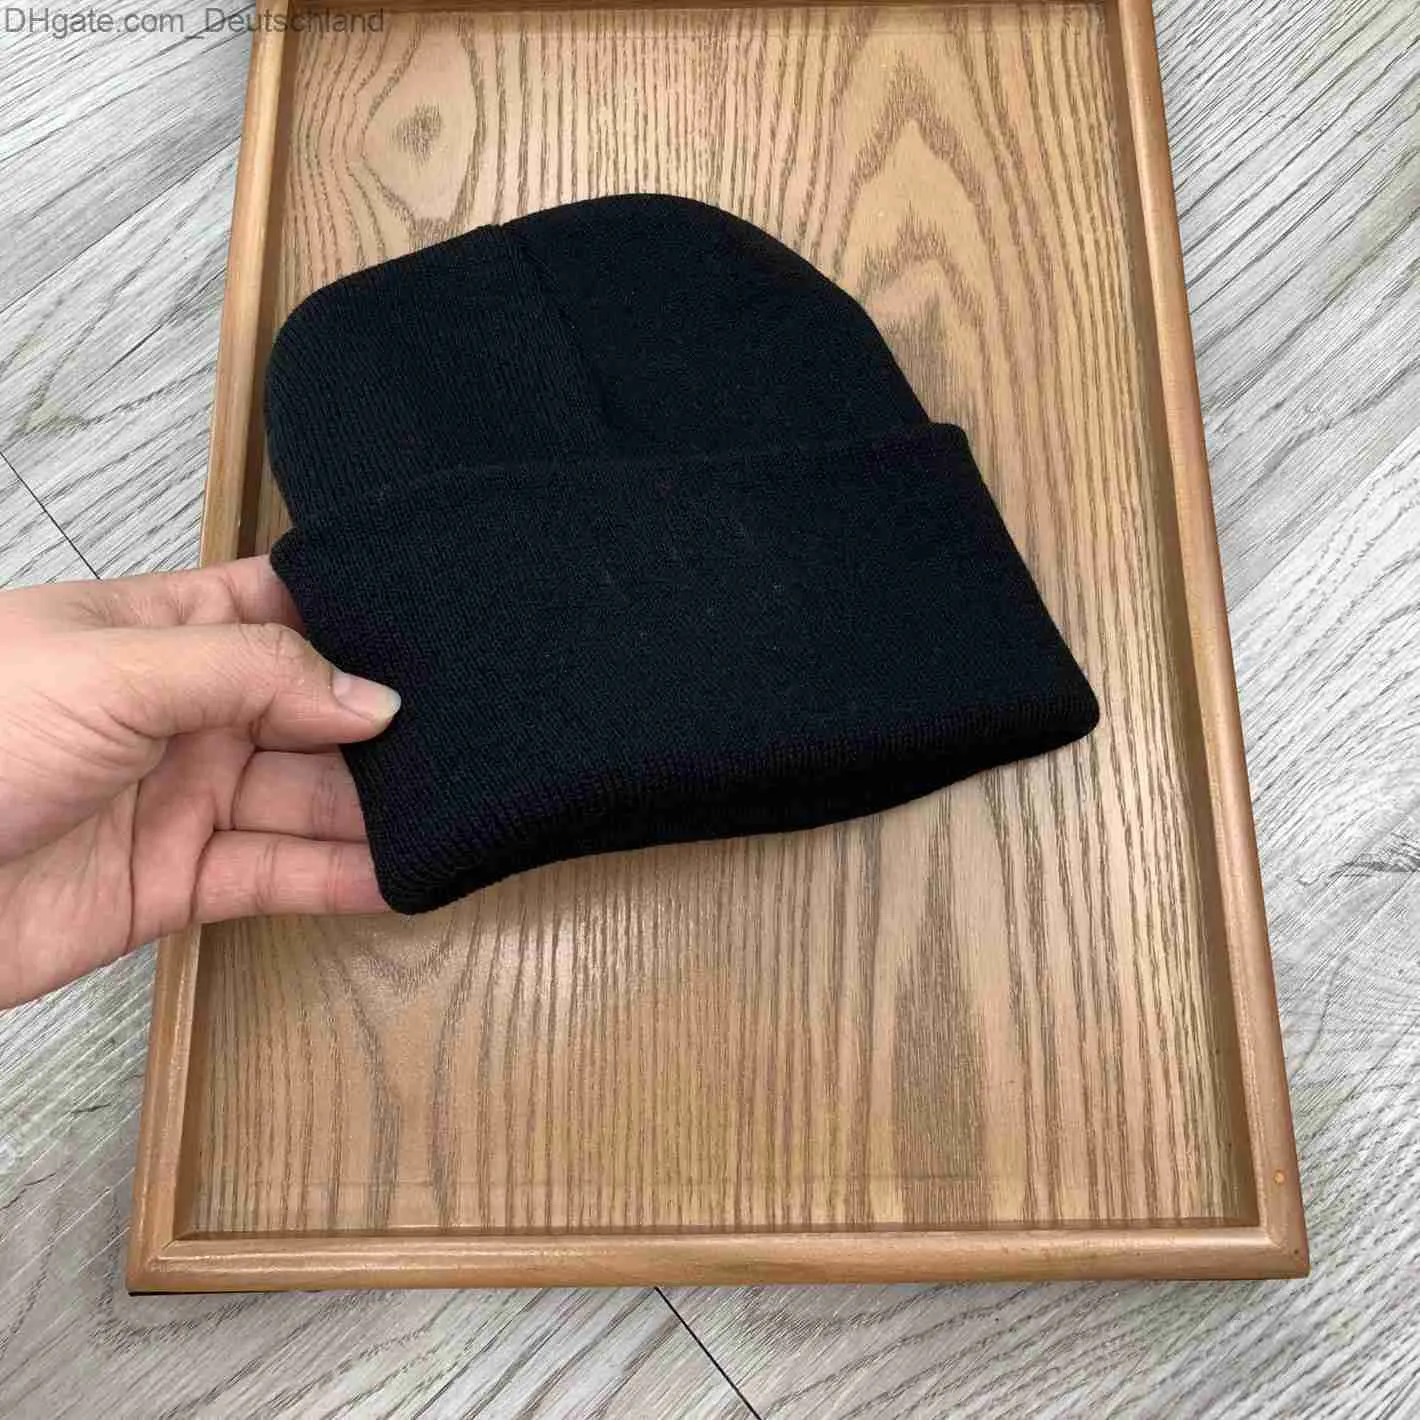 Bonnet/tête de mort casquettes noir bonnet chapeau plaine tricot Ski casquette chapeaux crâne chaud hiver unisexe sportif casquettes Z230818